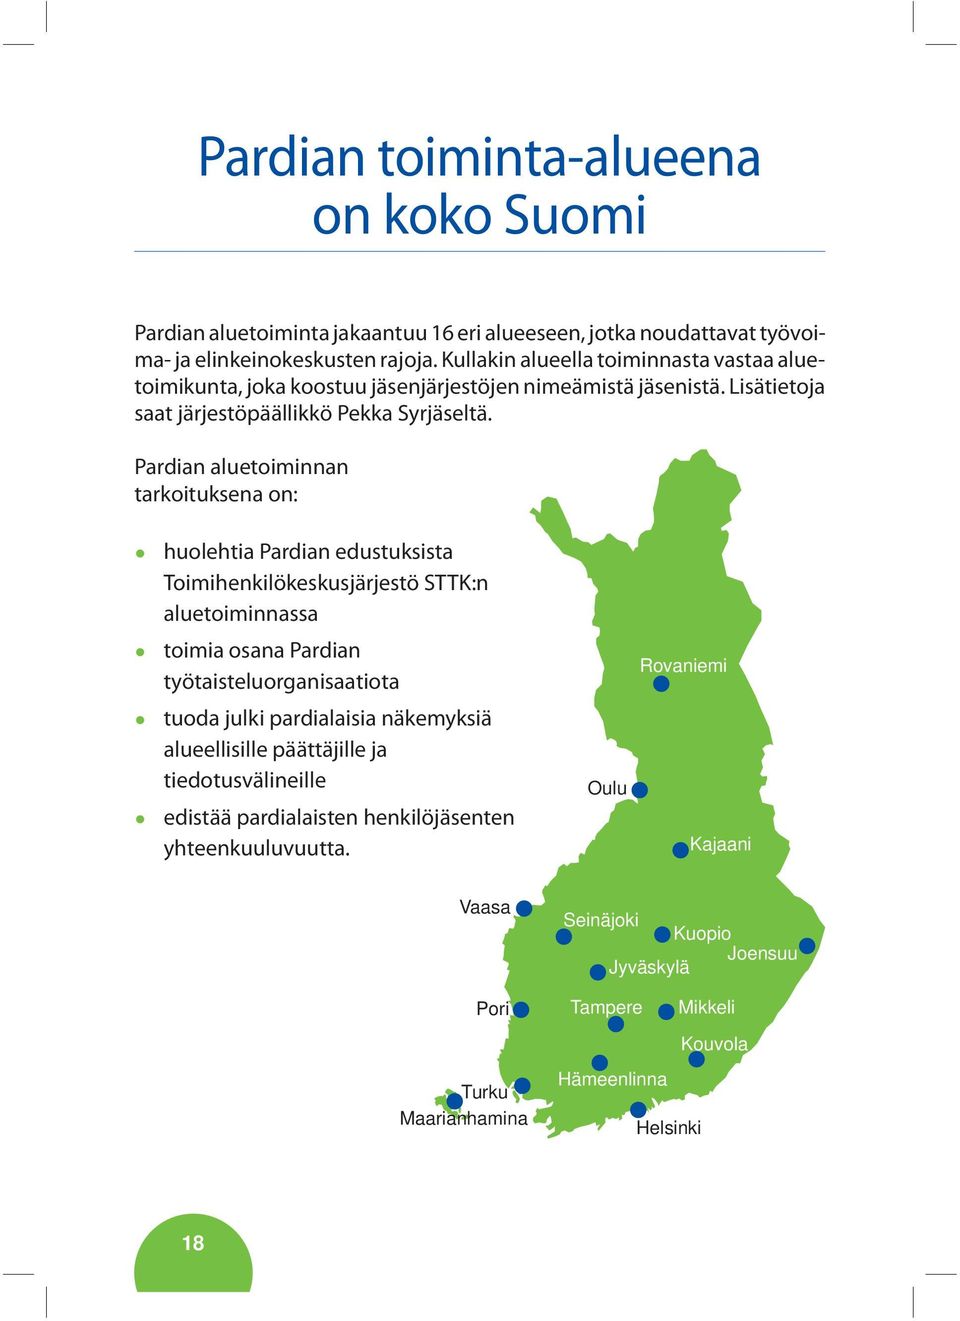 Pardian aluetoiminnan tarkoituksena on: huolehtia Pardian edustuksista Toimihenkilökeskusjärjestö STTK:n aluetoiminnassa toimia osana Pardian työtaisteluorganisaatiota Rovaniemi tuoda